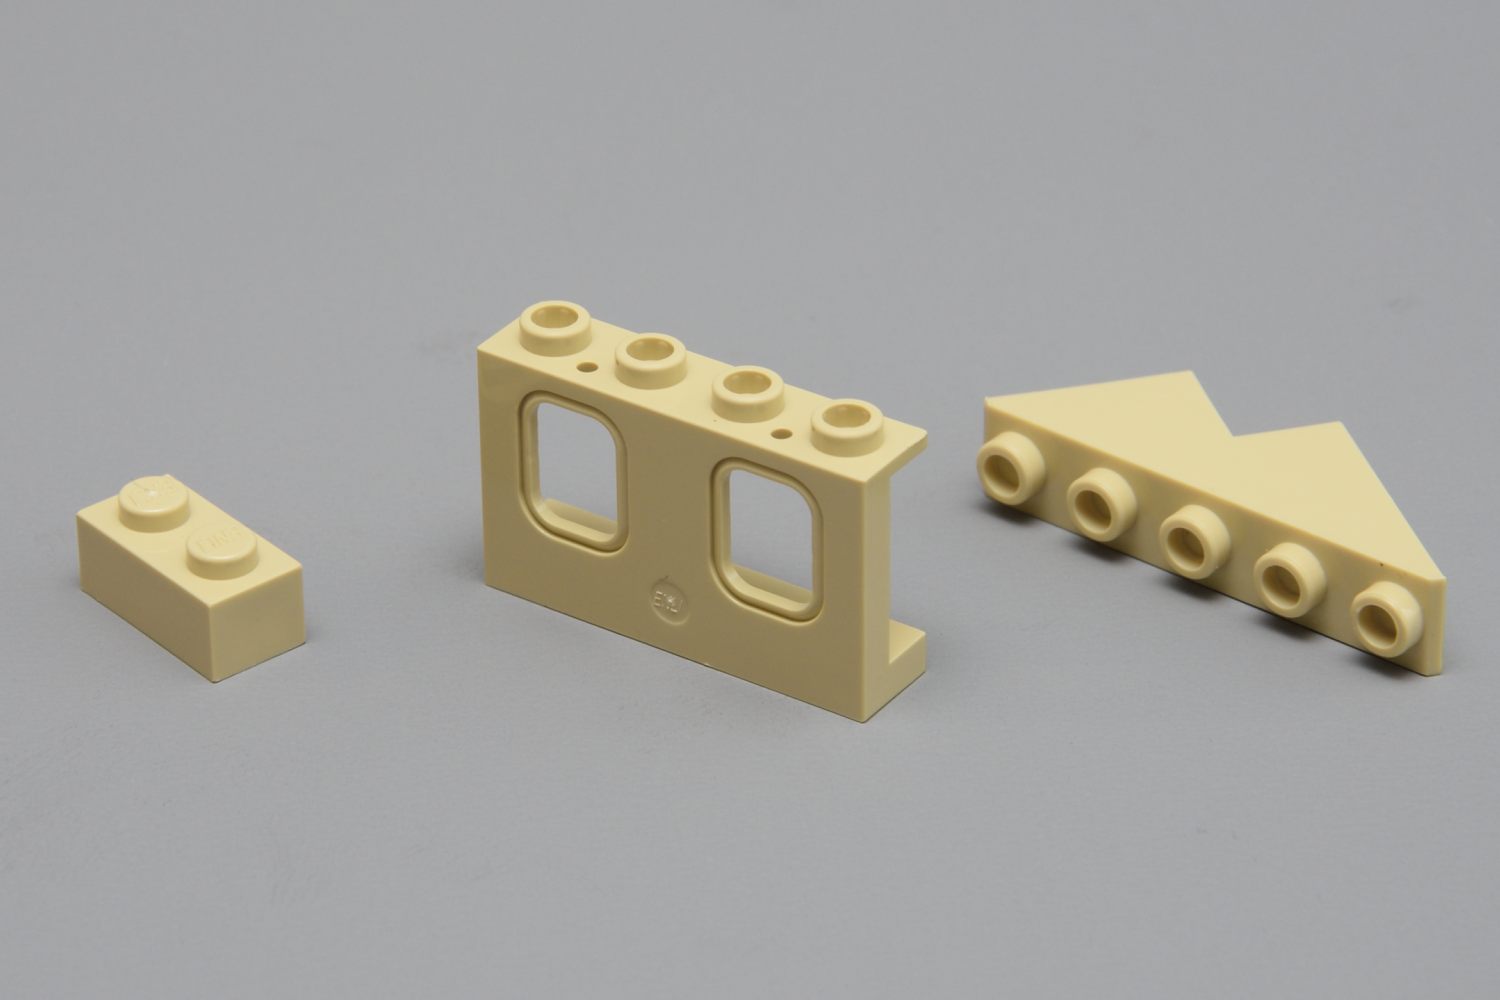 Teile die bei Lego bisher nie oder sehr selten verwendet wurden